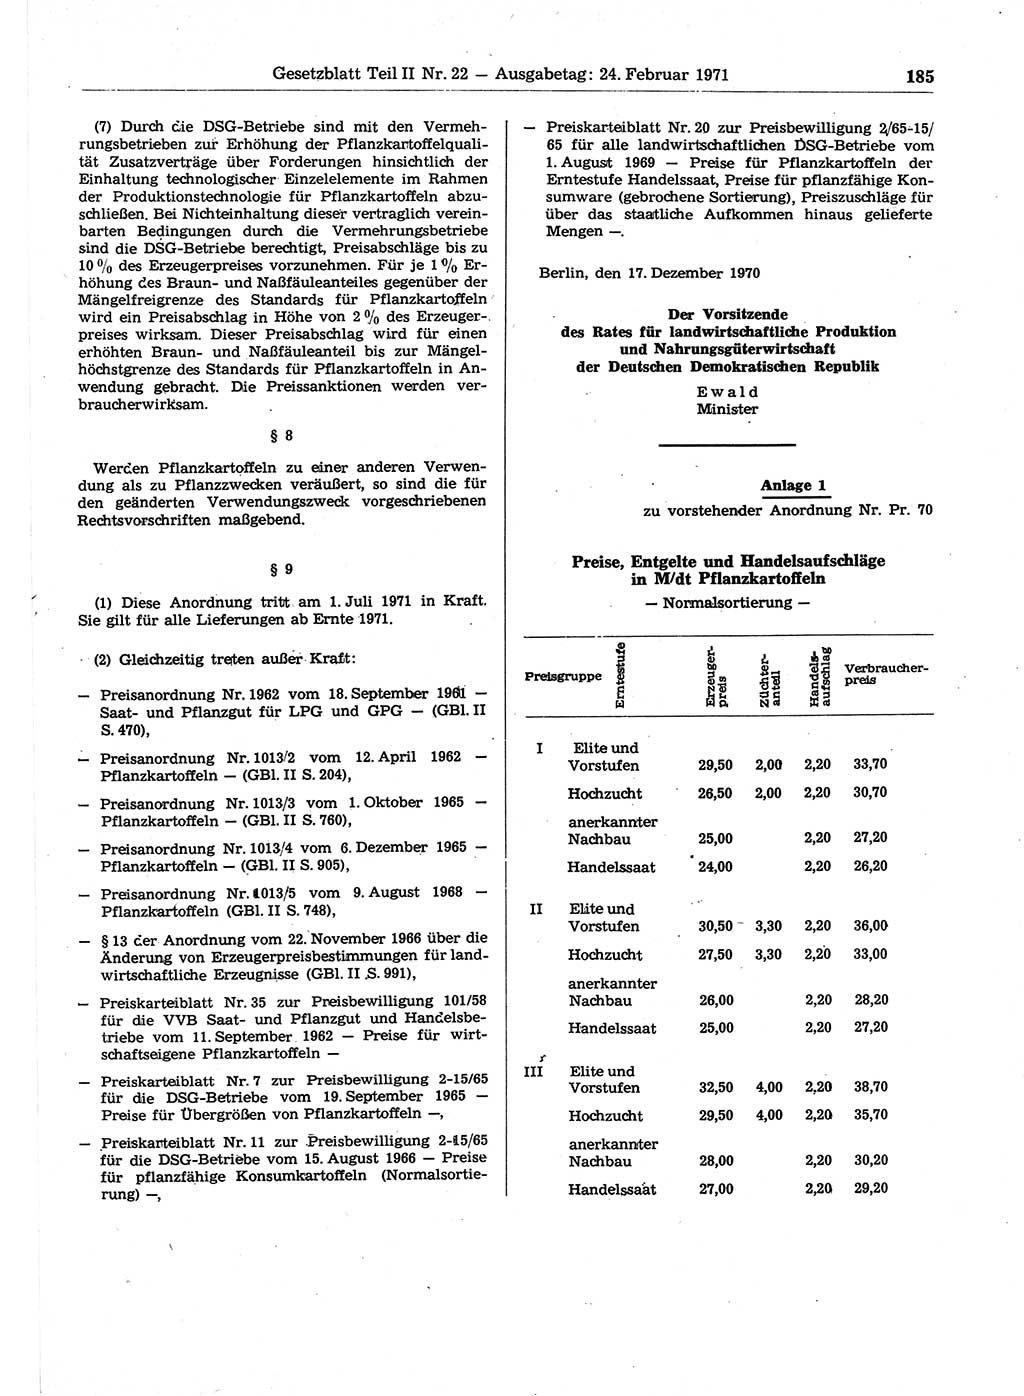 Gesetzblatt (GBl.) der Deutschen Demokratischen Republik (DDR) Teil ⅠⅠ 1971, Seite 185 (GBl. DDR ⅠⅠ 1971, S. 185)